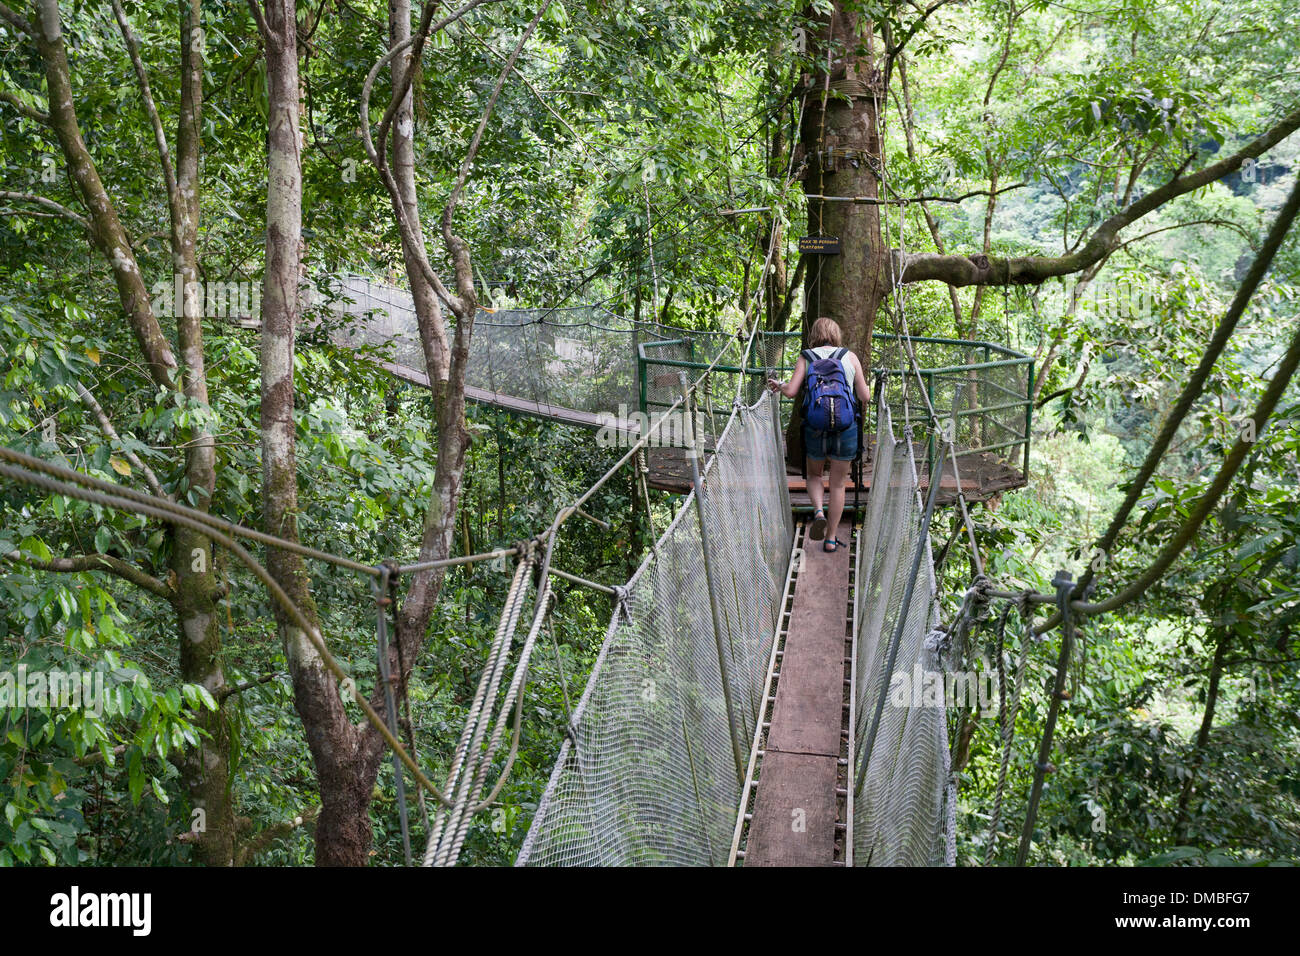 Une femme marche le long d'une des passerelles suspendues dans le couvert forestier à la Rainmaker Conservation Project au Costa Rica. Banque D'Images